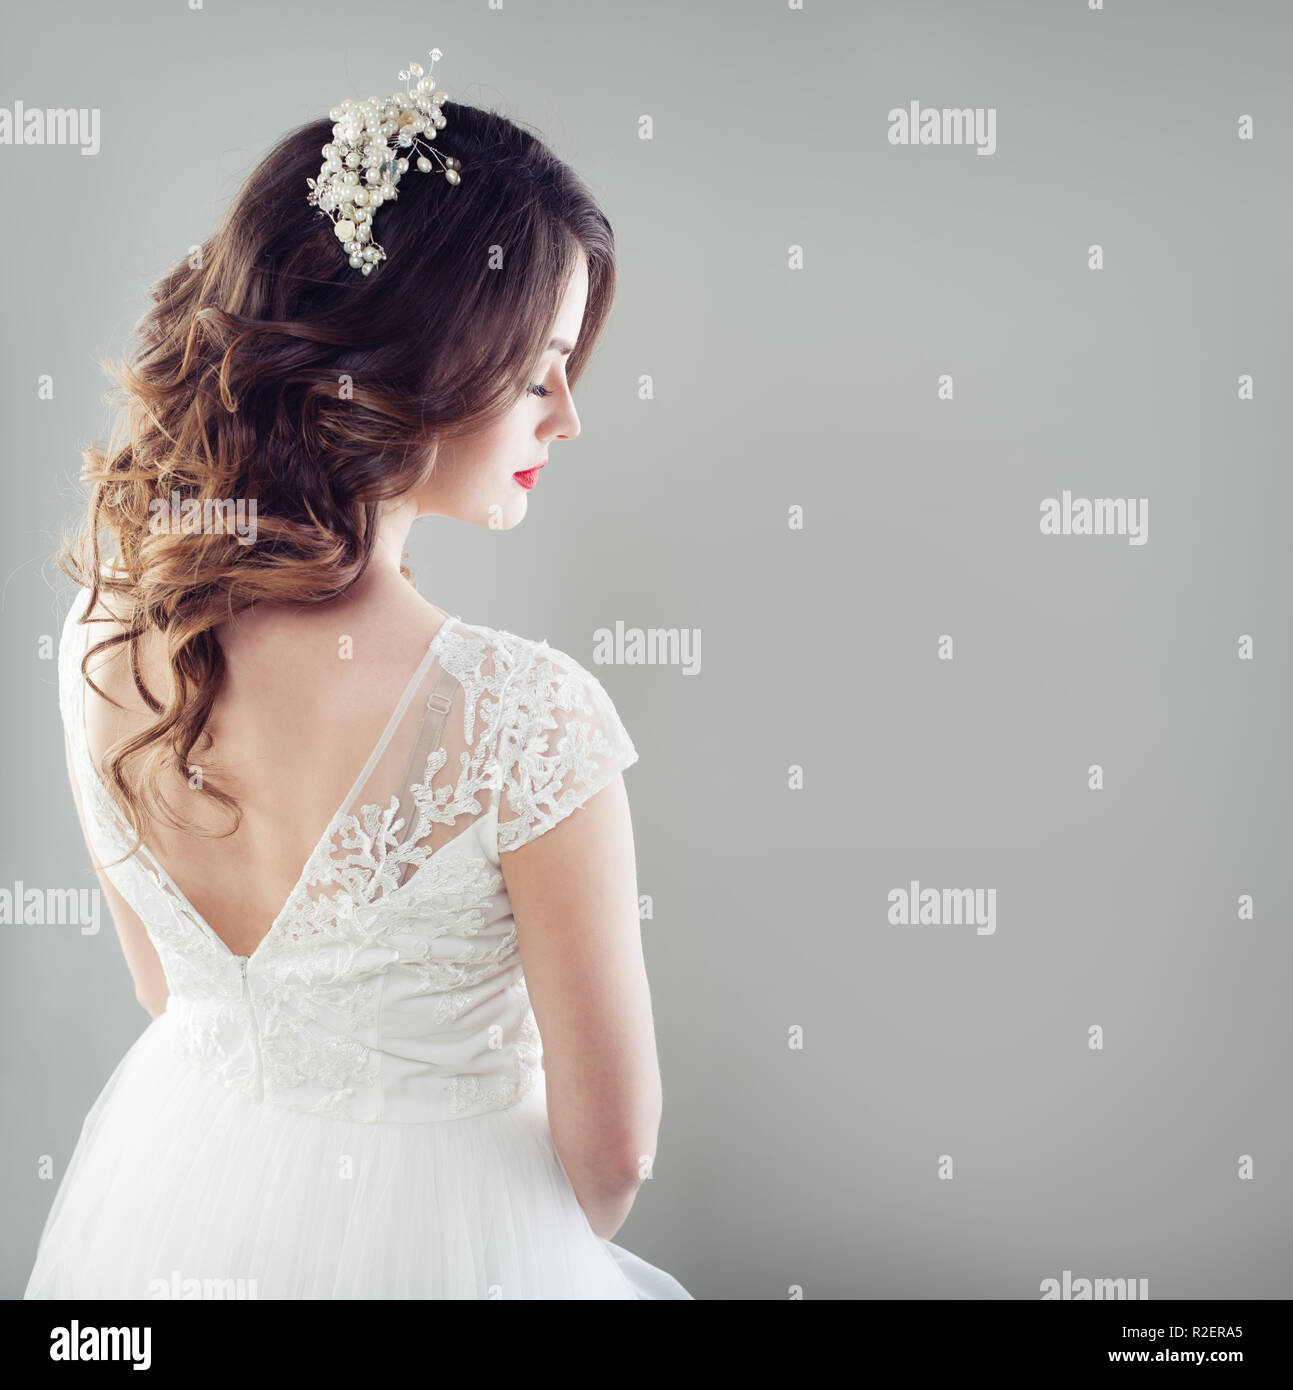 Capelli da sposa immagini e fotografie stock ad alta risoluzione - Alamy